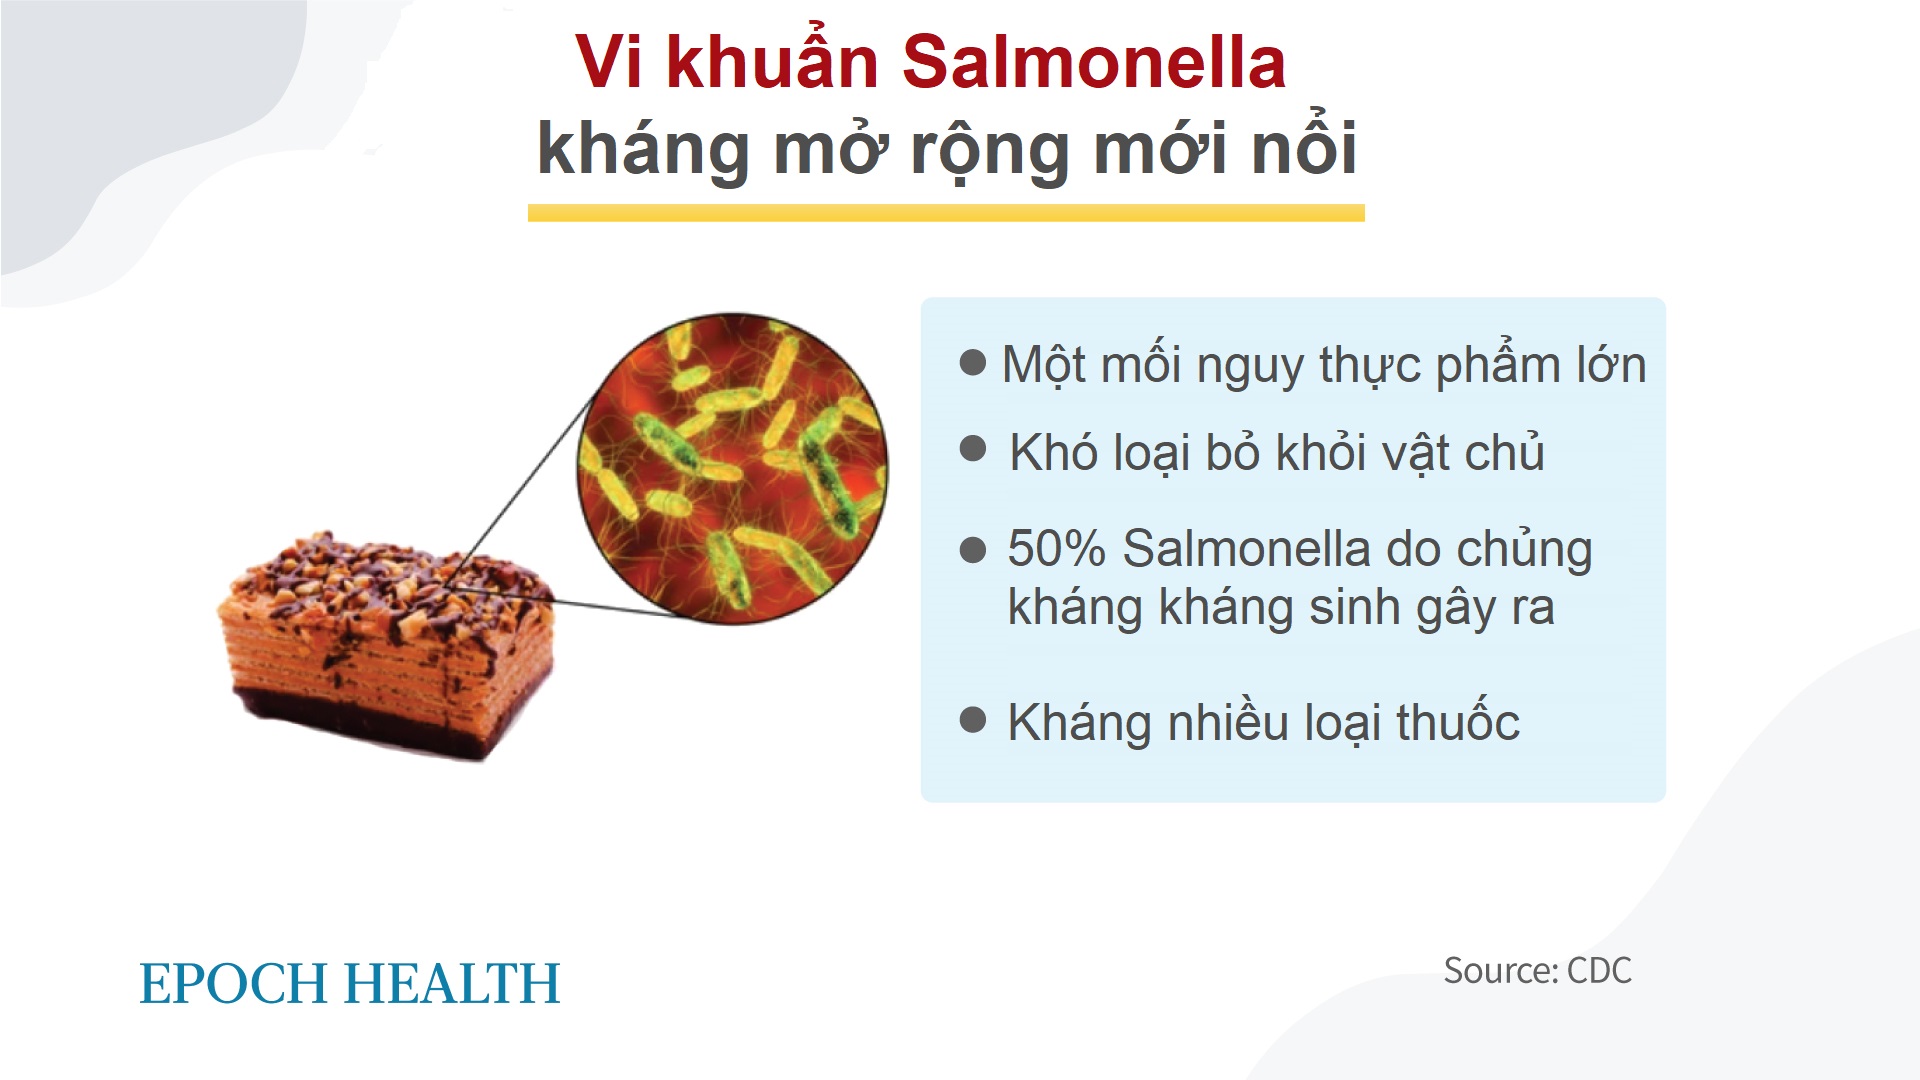 Vi khuẩn Salmonella: Từ kháng thuốc đến kháng thuốc toàn diện